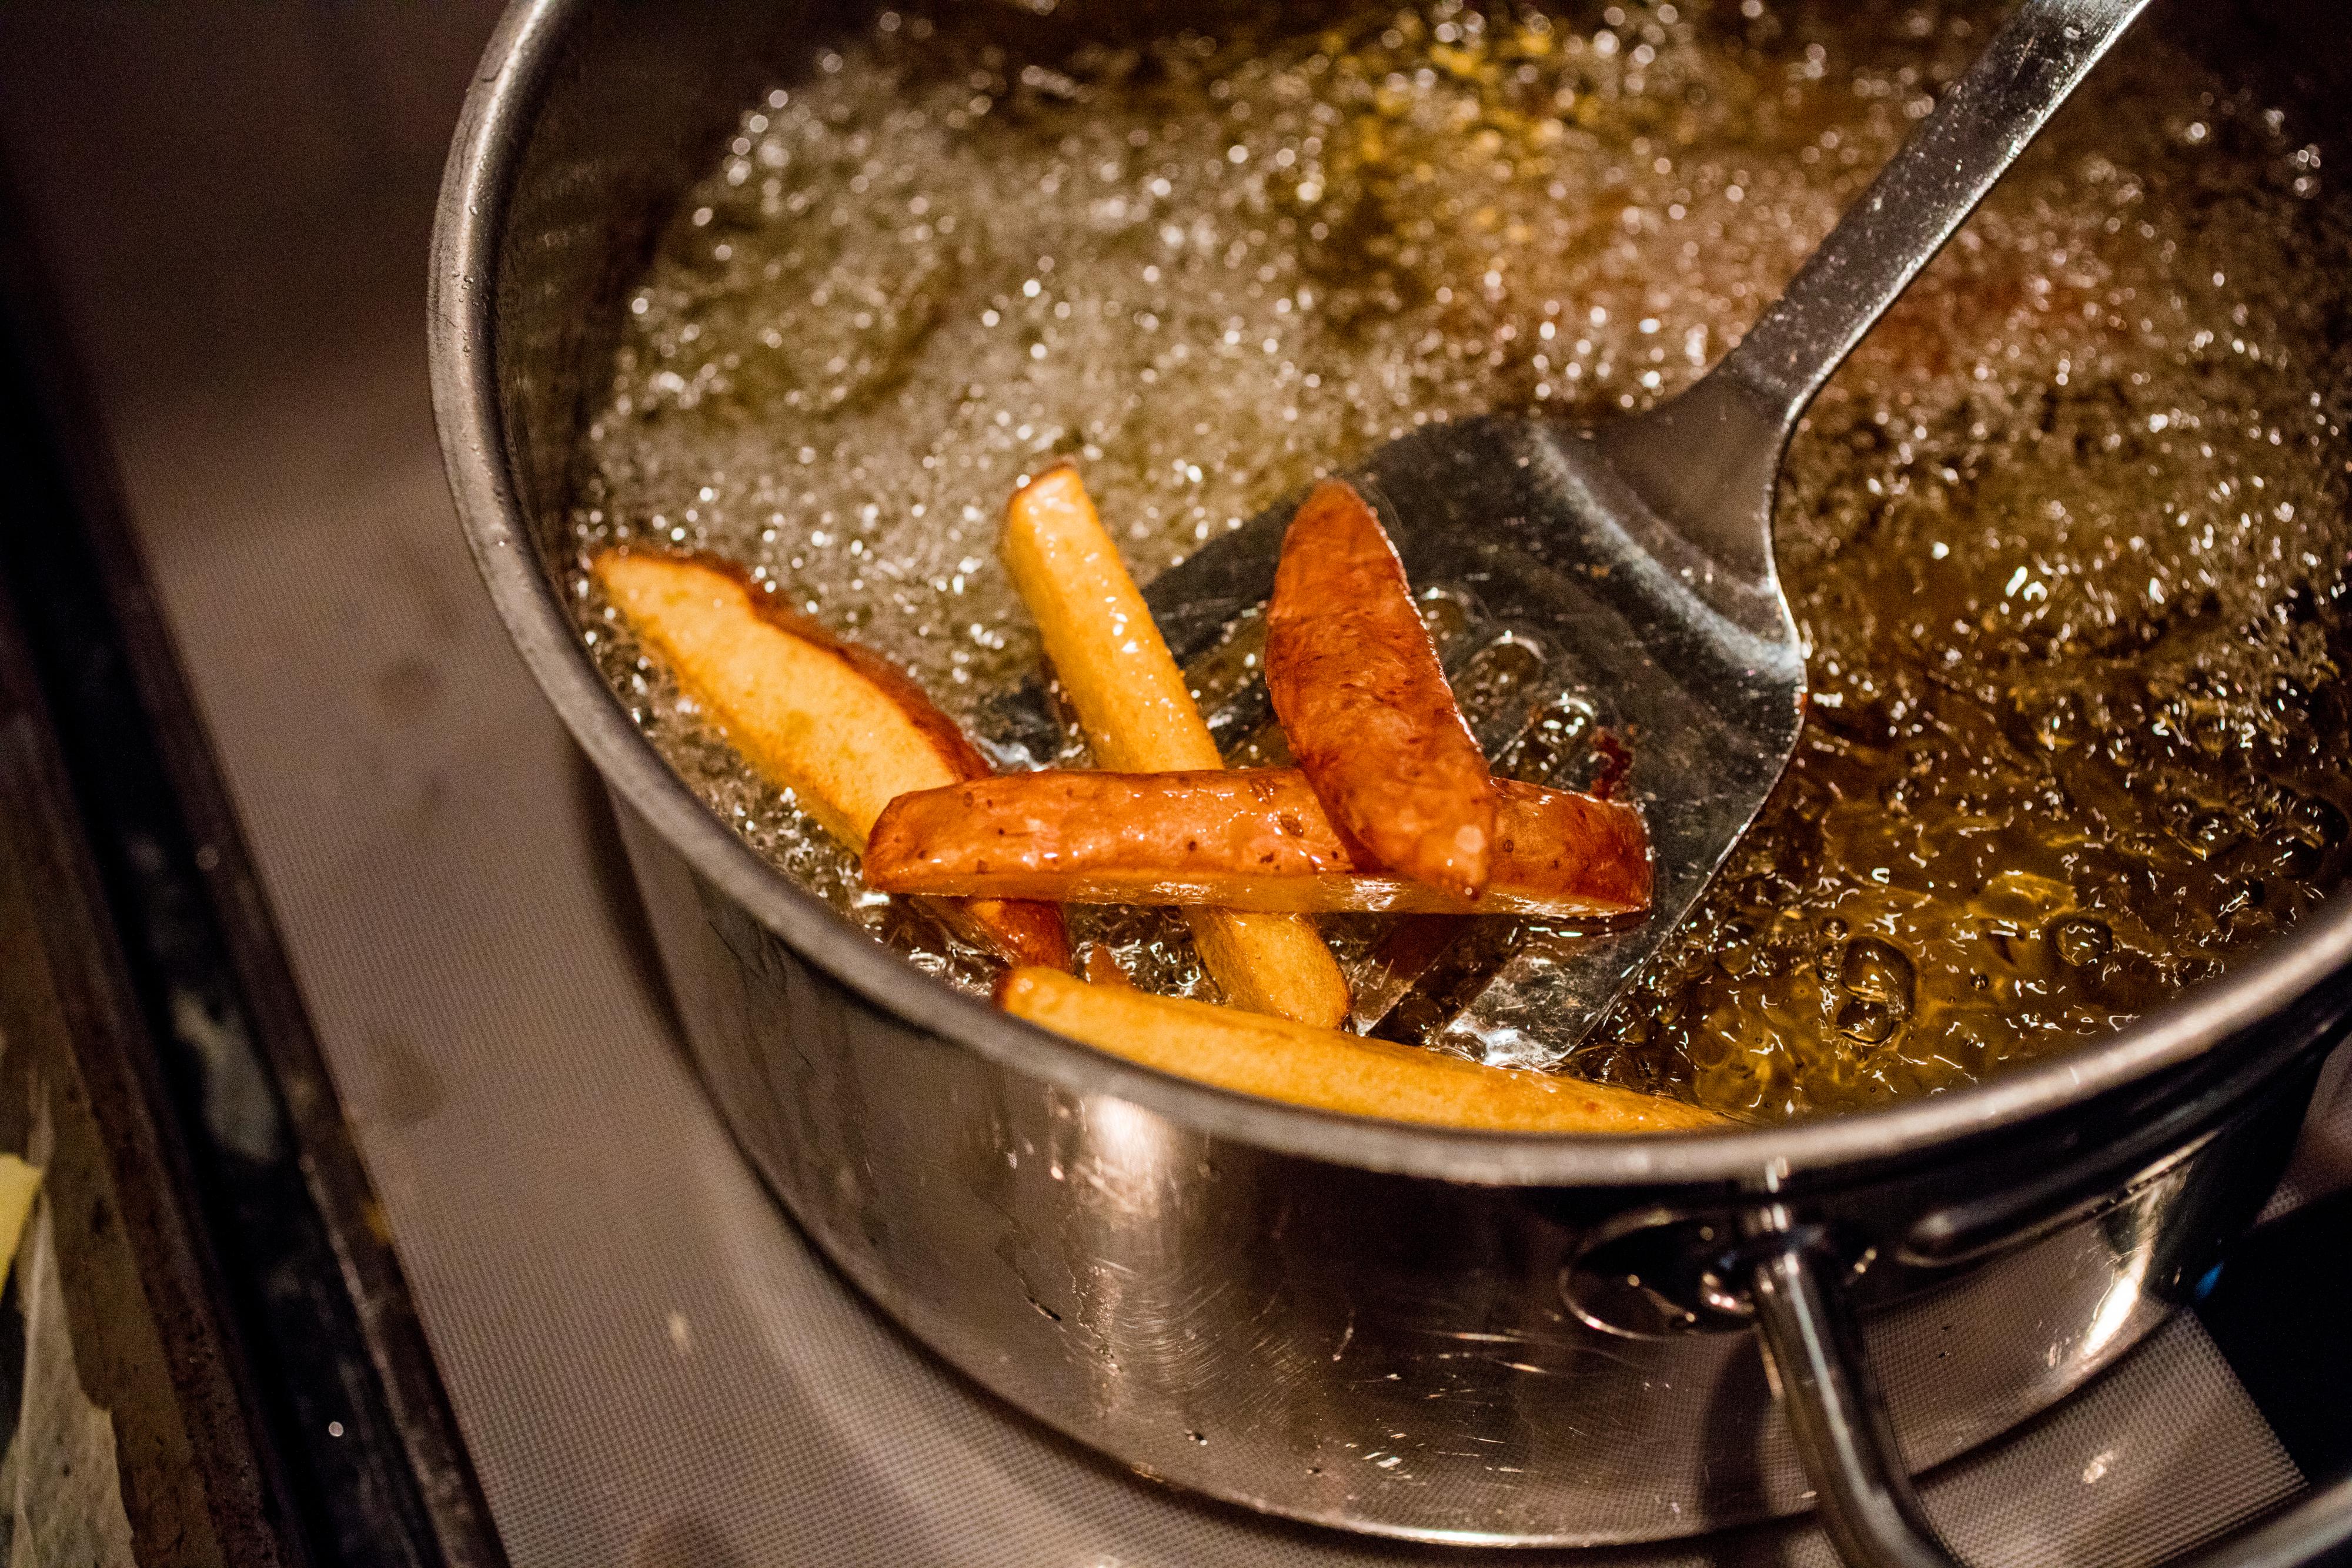 Pommes frites: Skjær potetene i ca. 1 cm tykke staver. Legg alle potetstavene over i en bolle og la de ligge under rennende kaldt vann i 5 minutter. Hell av vannet, fordel potetene utover et kjøkkenklede og klapp dem helt tørre med kjøkkenpapir. Er det vann igjen på potetene vil det sprute veldig under friteringen, og det må vi for all del unngå. Varm oljen til 160 grader i en tykkbunnet kasserolle med høye kanter. Friter potetene knapt møre og la de renne av seg på kjøkkenpapir. Du må nok gjøre det i flere omganger for ikke å avkjøle oljen. Varm oljen opp til 180 grader og friter potetene gylne og sprø rett før servering. La de få renne av seg på kjøkkenpapir og dryss over salt med det samme. Serveres nystekte og gjerne toppet med noen dråper trøffel olje, revet parmesan og hakket persille.